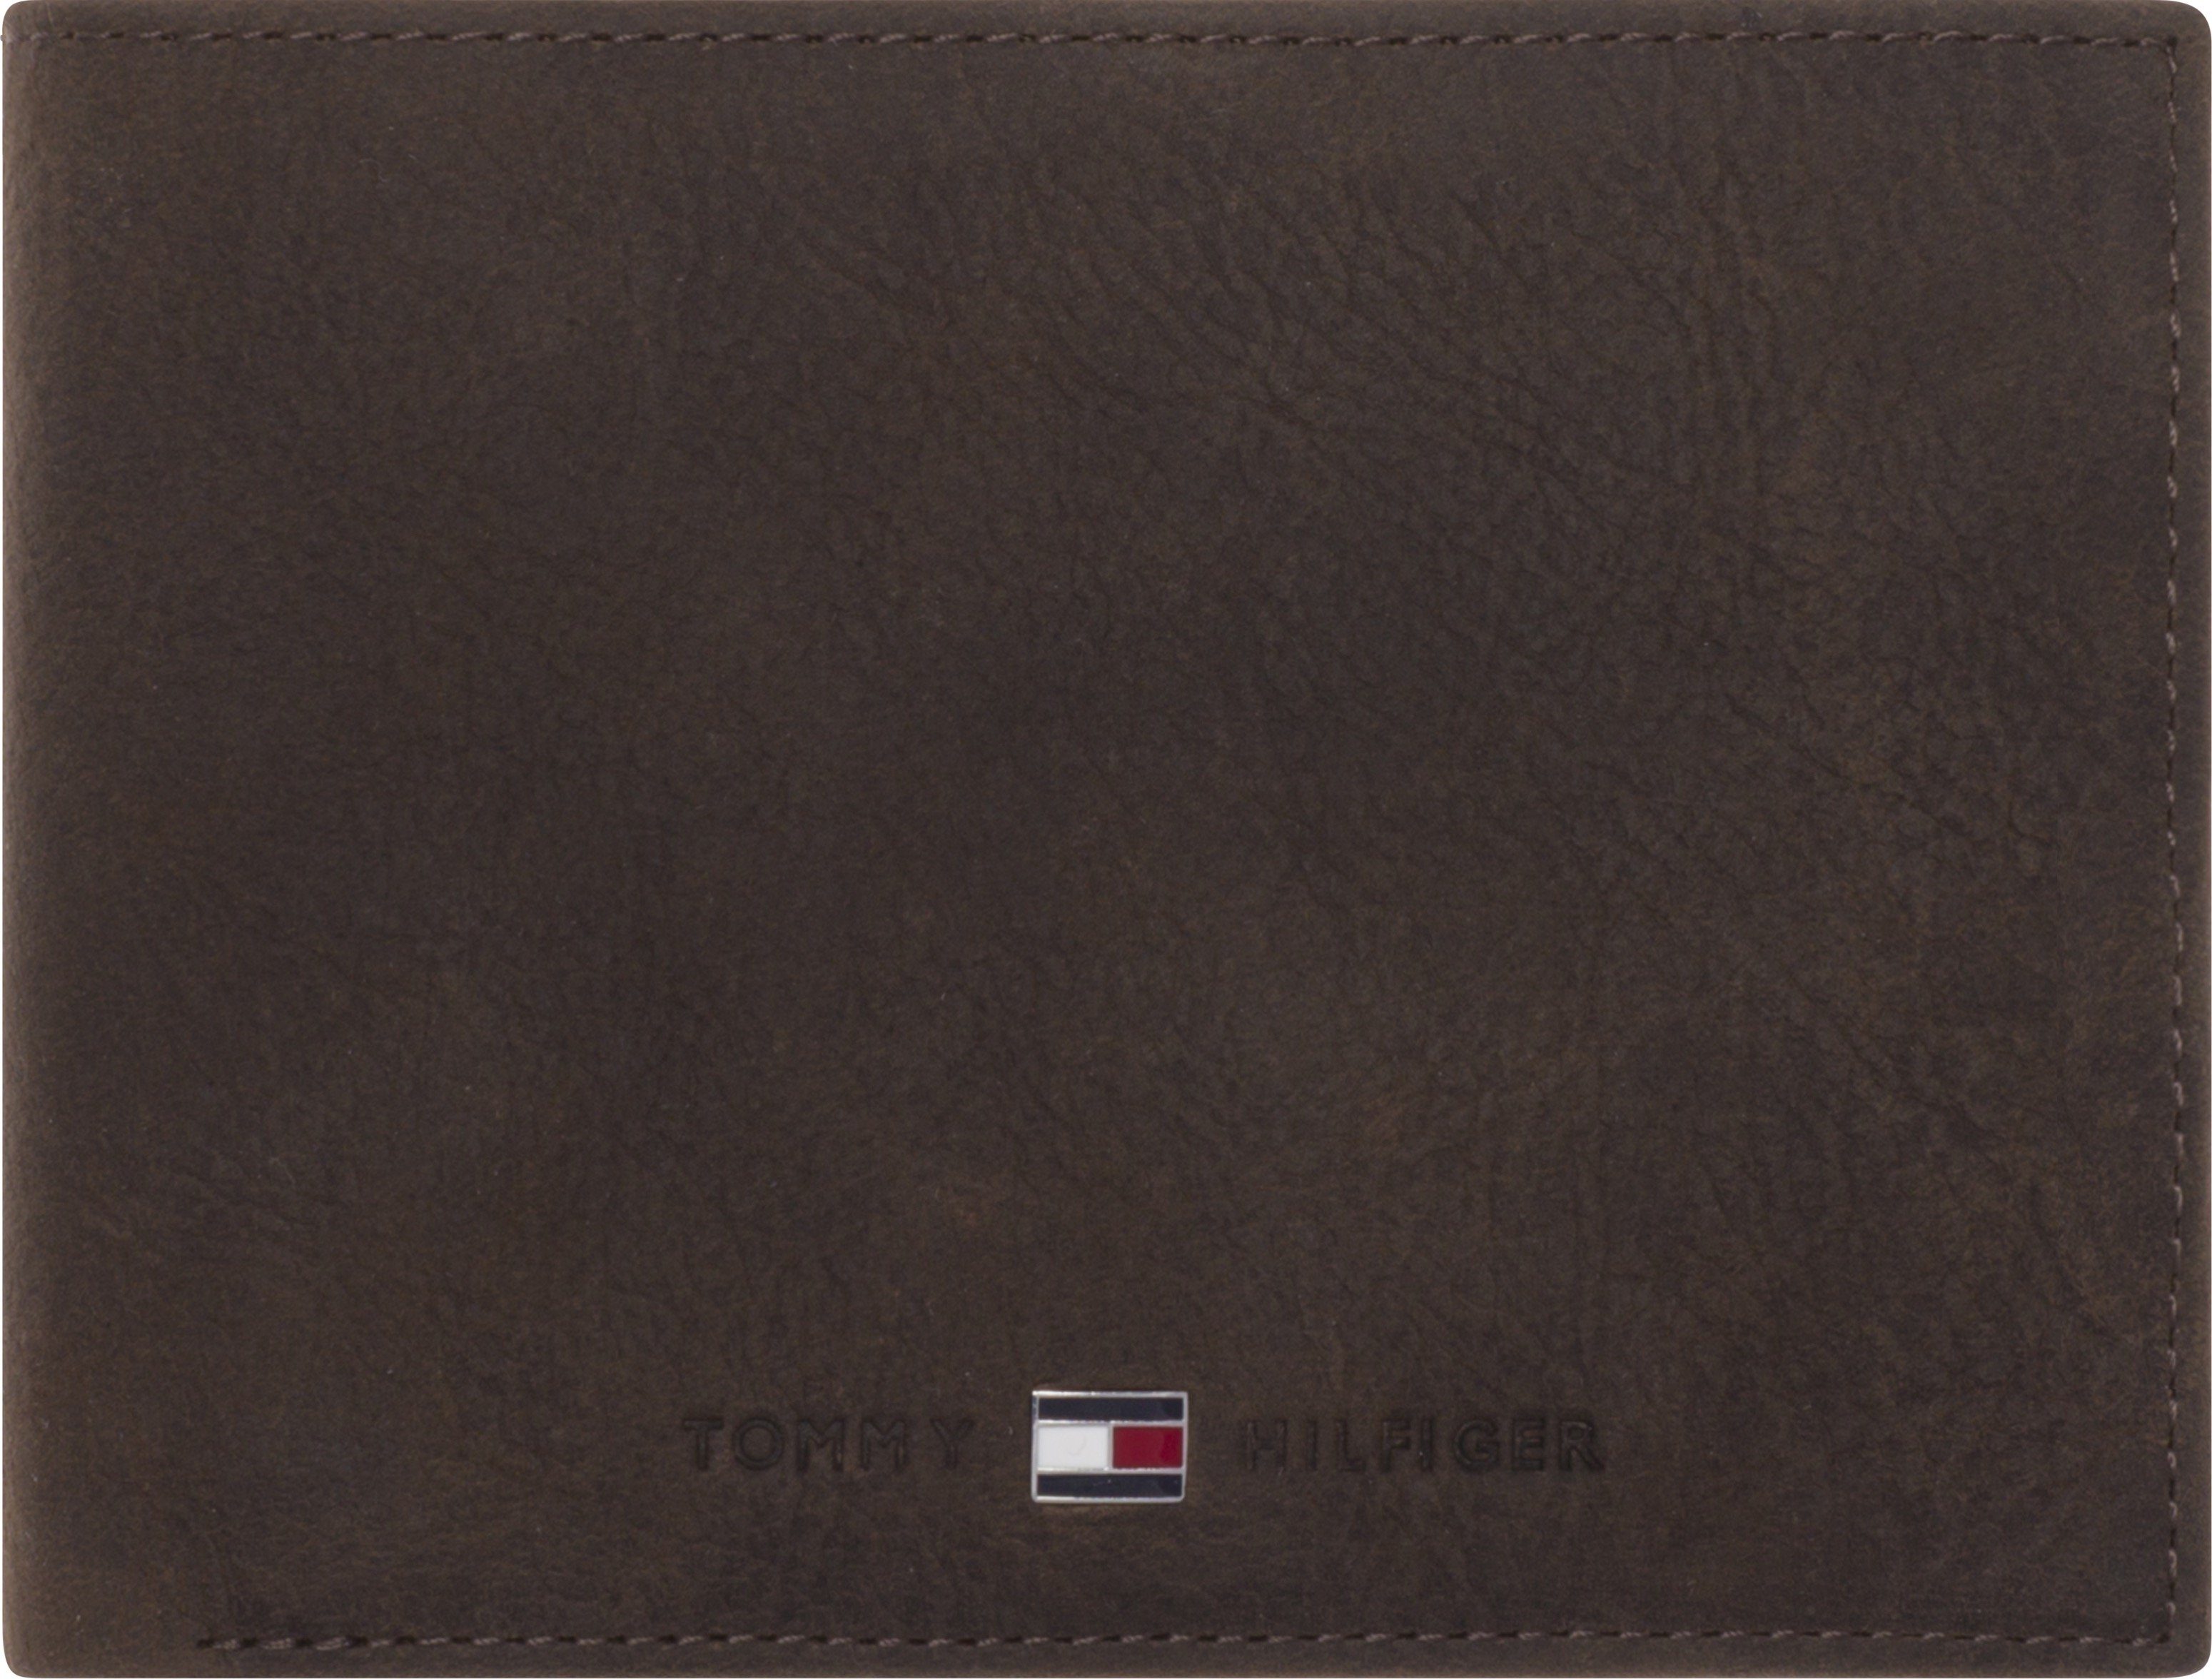 Tommy Hilfiger Geldbörse JOHNSON CC AND COIN POCKET, im kleinen Format aus  hochwertigem Leder